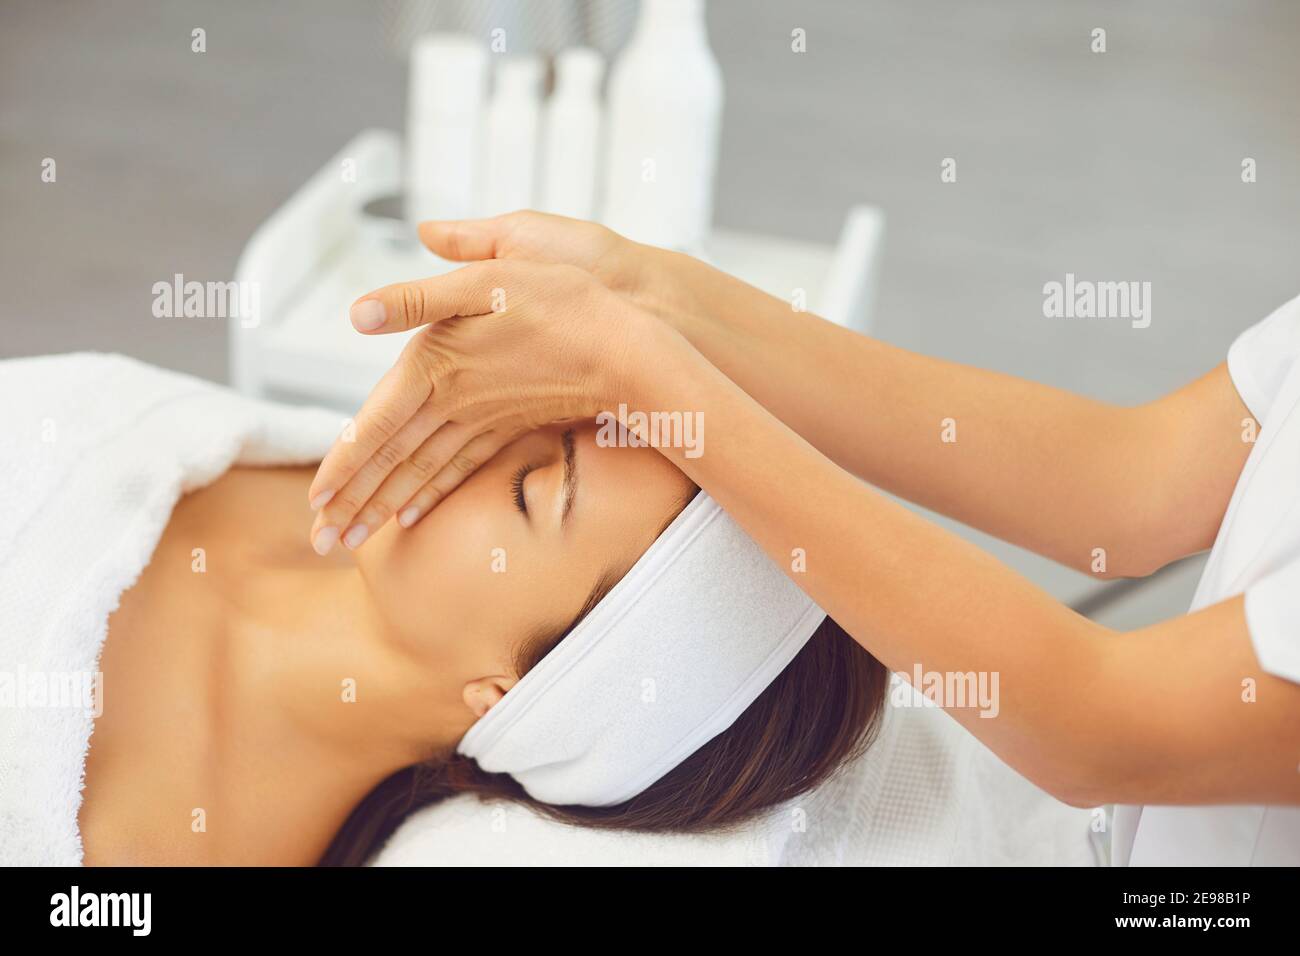 Massaggiatore per la preparazione di un massaggio rilassante manuale professionale per giovani donne faccia Foto Stock